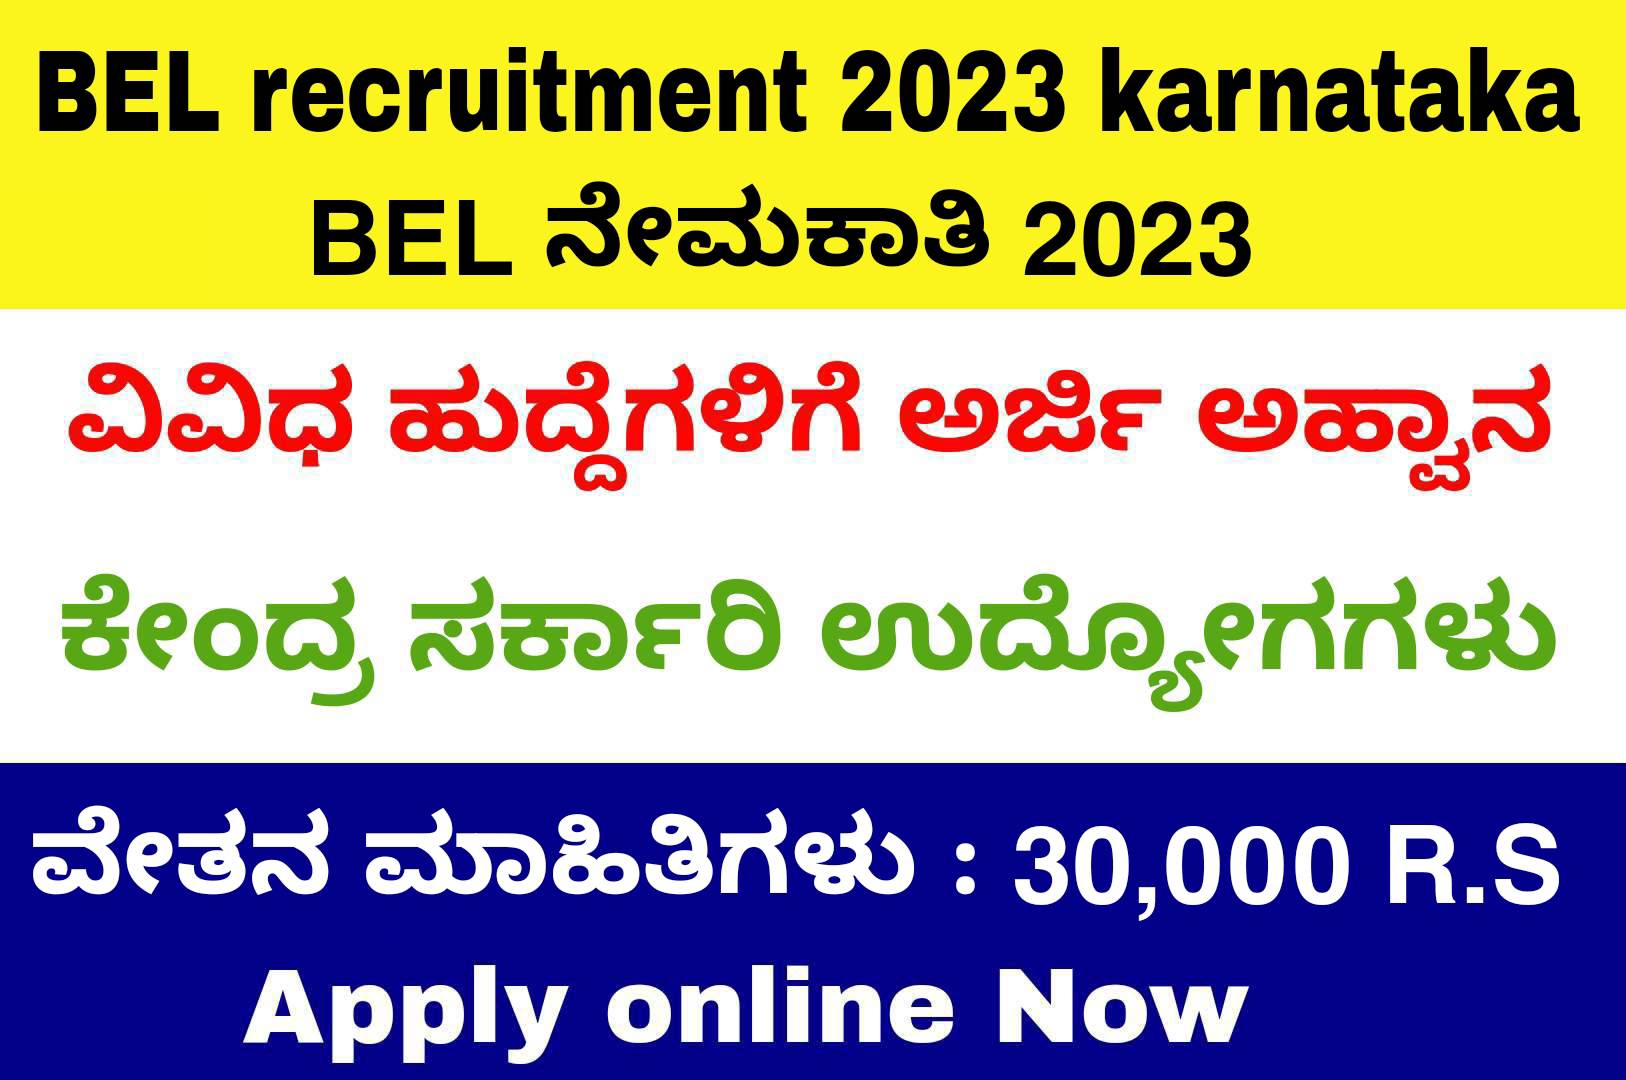 bel recruitment 2023 karnataka